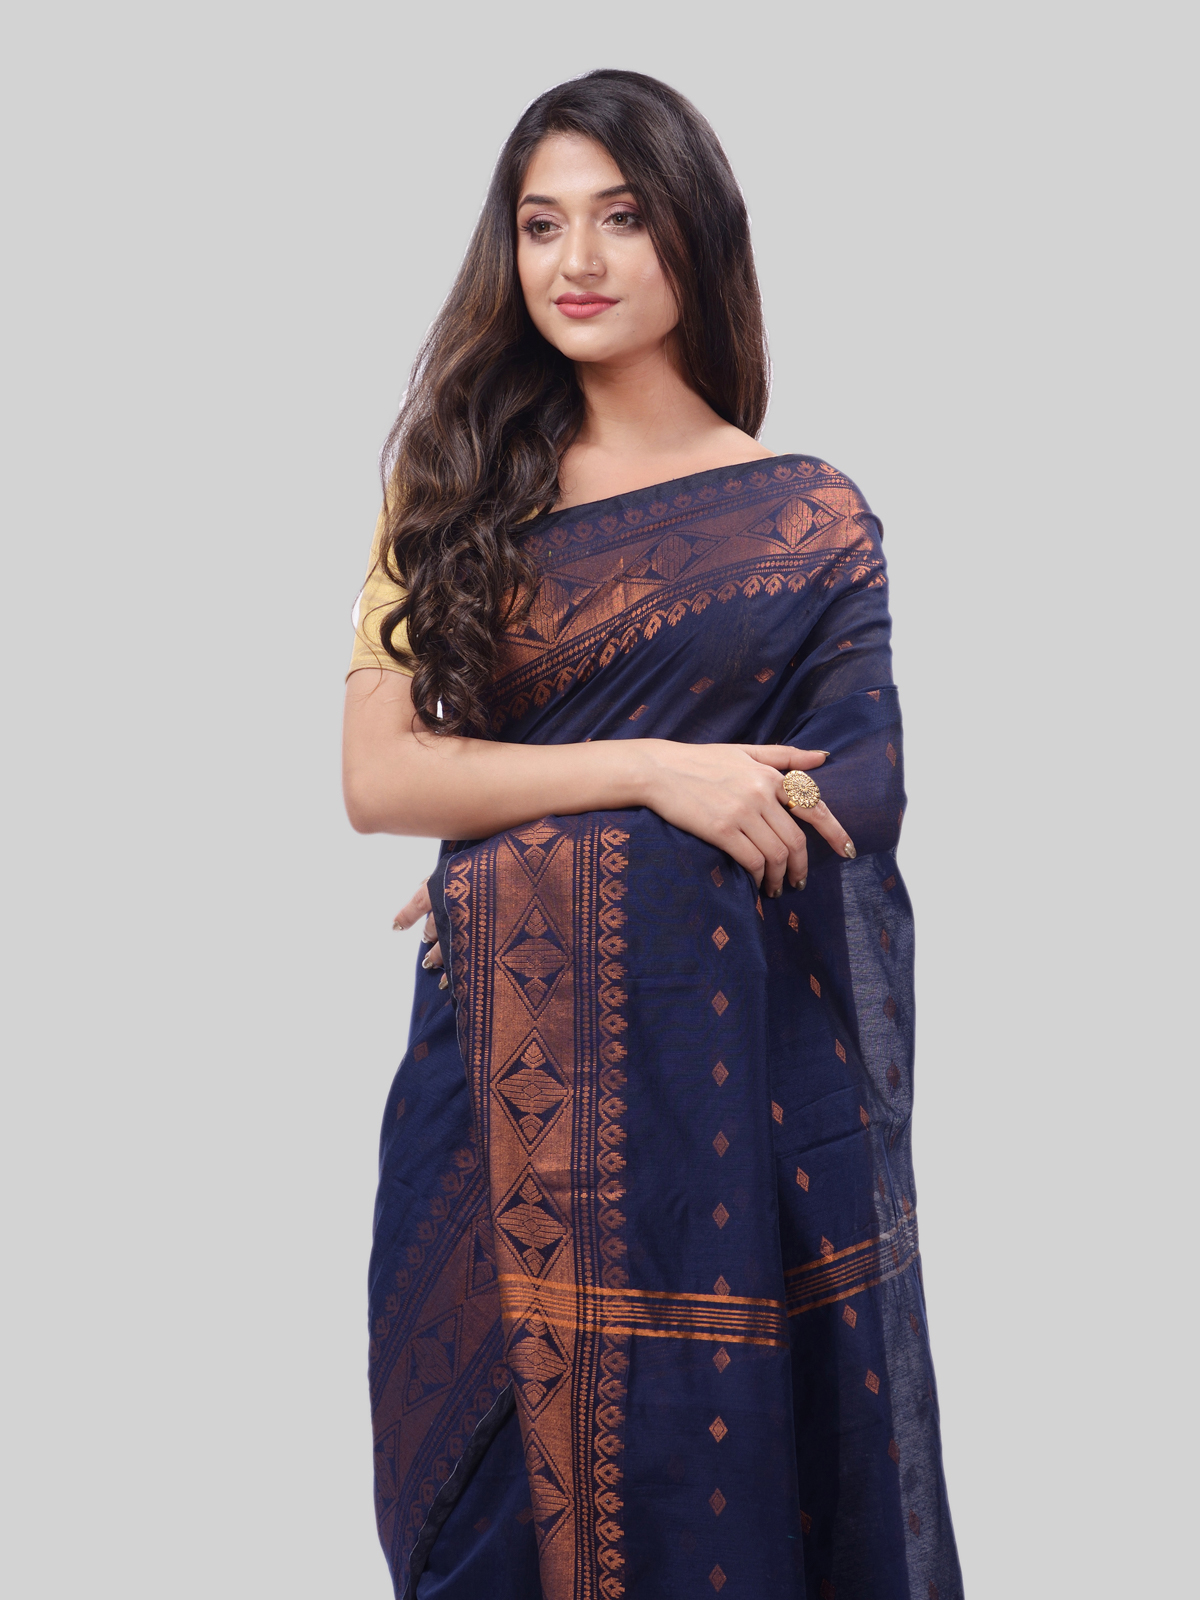 DESH BIDESH Women`s Bengal Cotton Silk Pure Handloom Cotton Saree Kohinoor Work With Blouse Piece(Dark Blue)